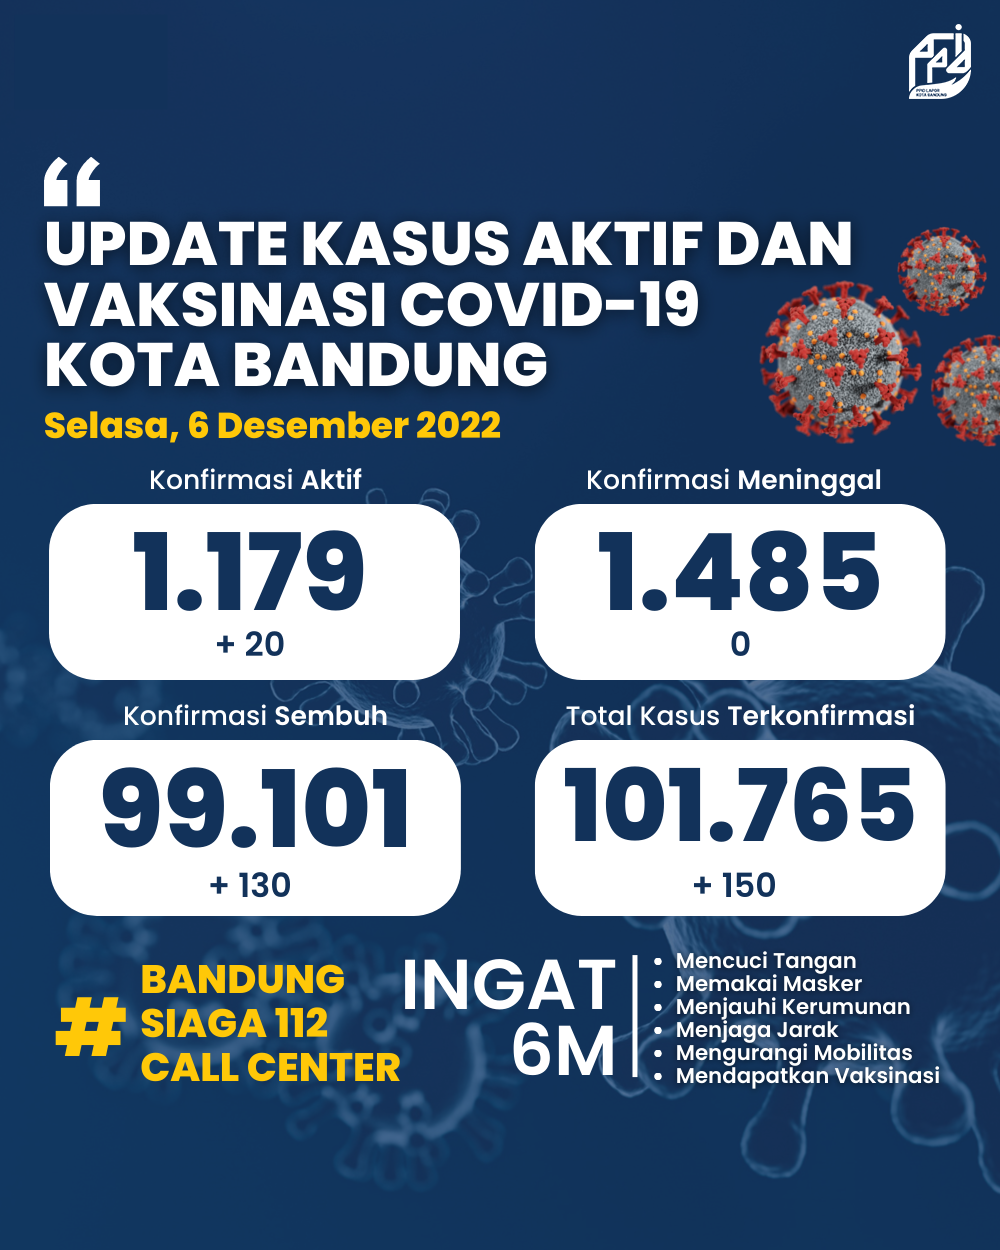 UPDATE STATISTIK COVID-19 DI KOTA BANDUNG PER TANGGAL 6 DESEMBER 2022